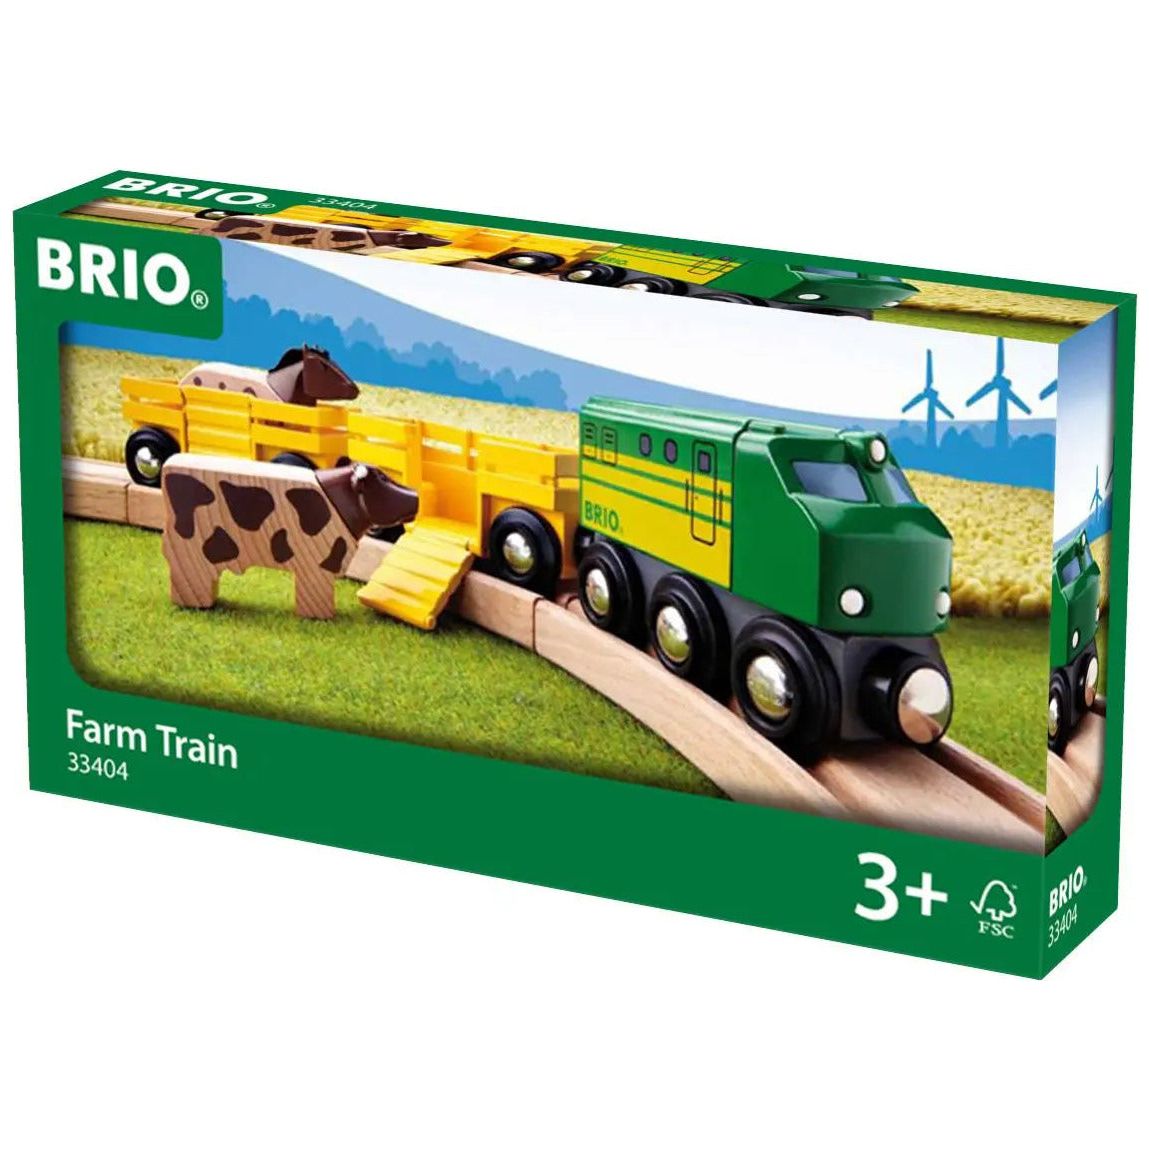 Brio World Farm Train BRIO